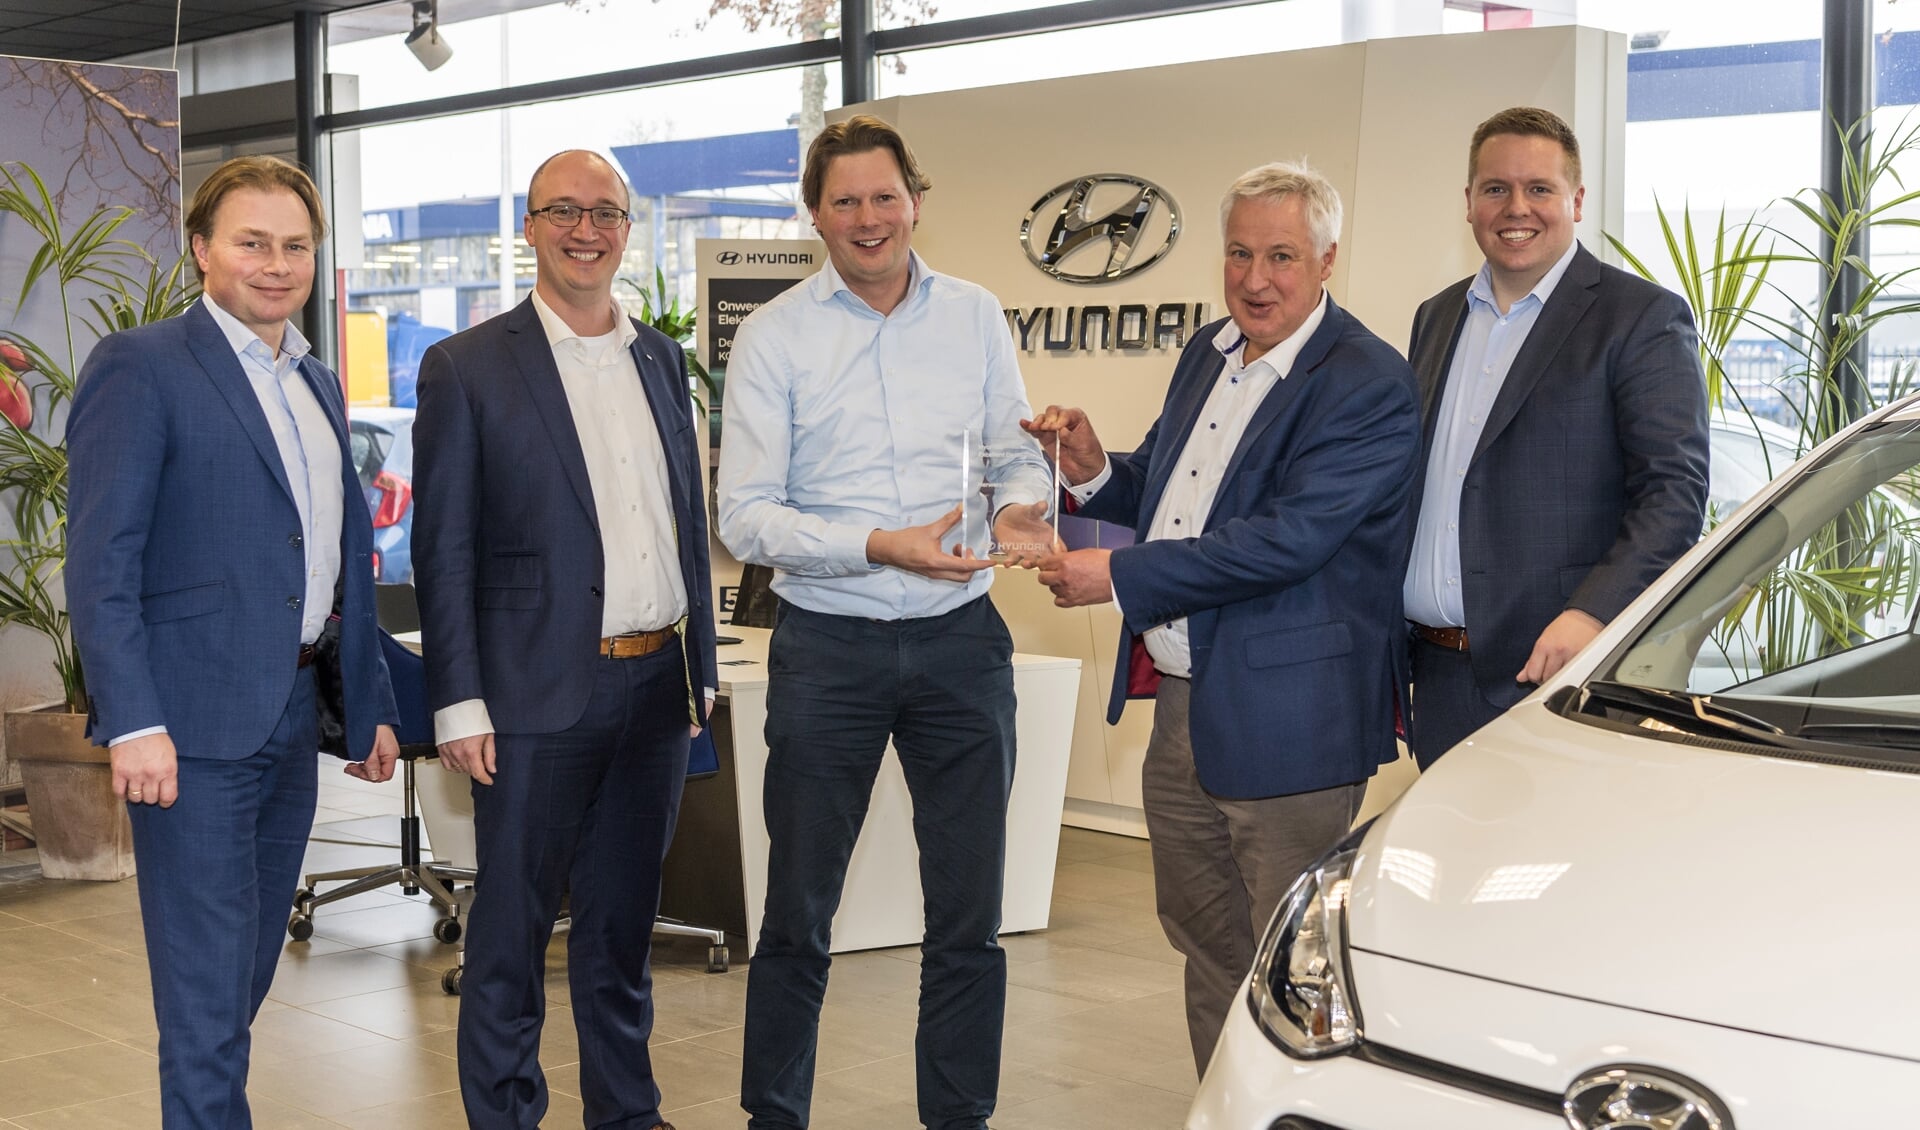 Theo Eitjes, Director After Sales van Hyundai Motor Nederland, reikte de bijbehorende onderscheiding uit aan directeur Jos Herwers. Foto: PR